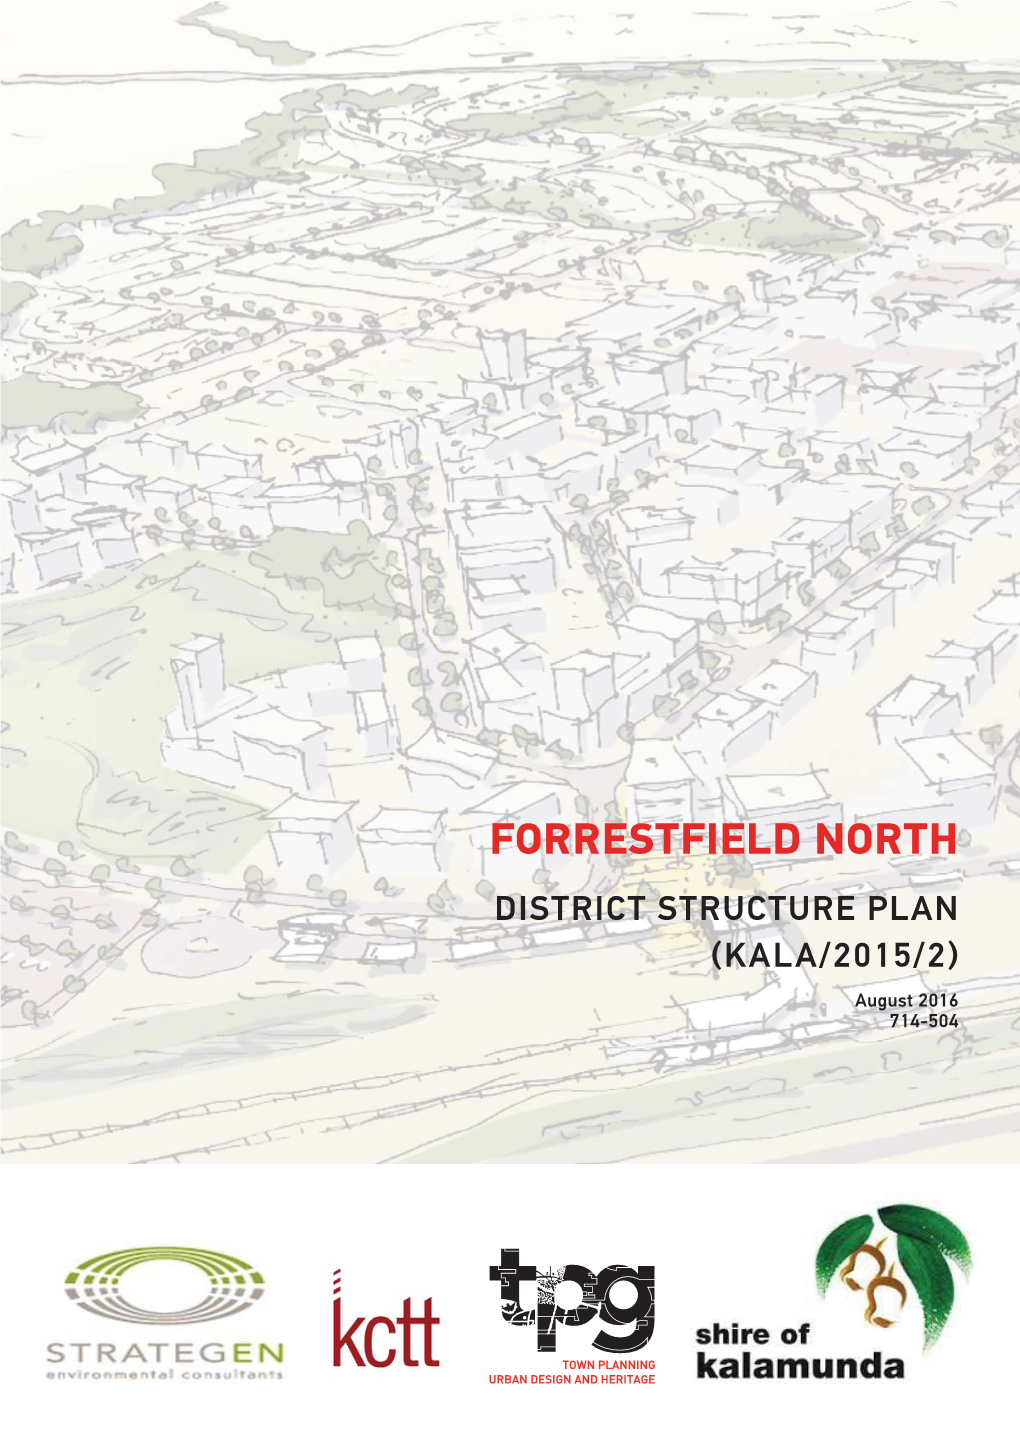 Forrestfield North